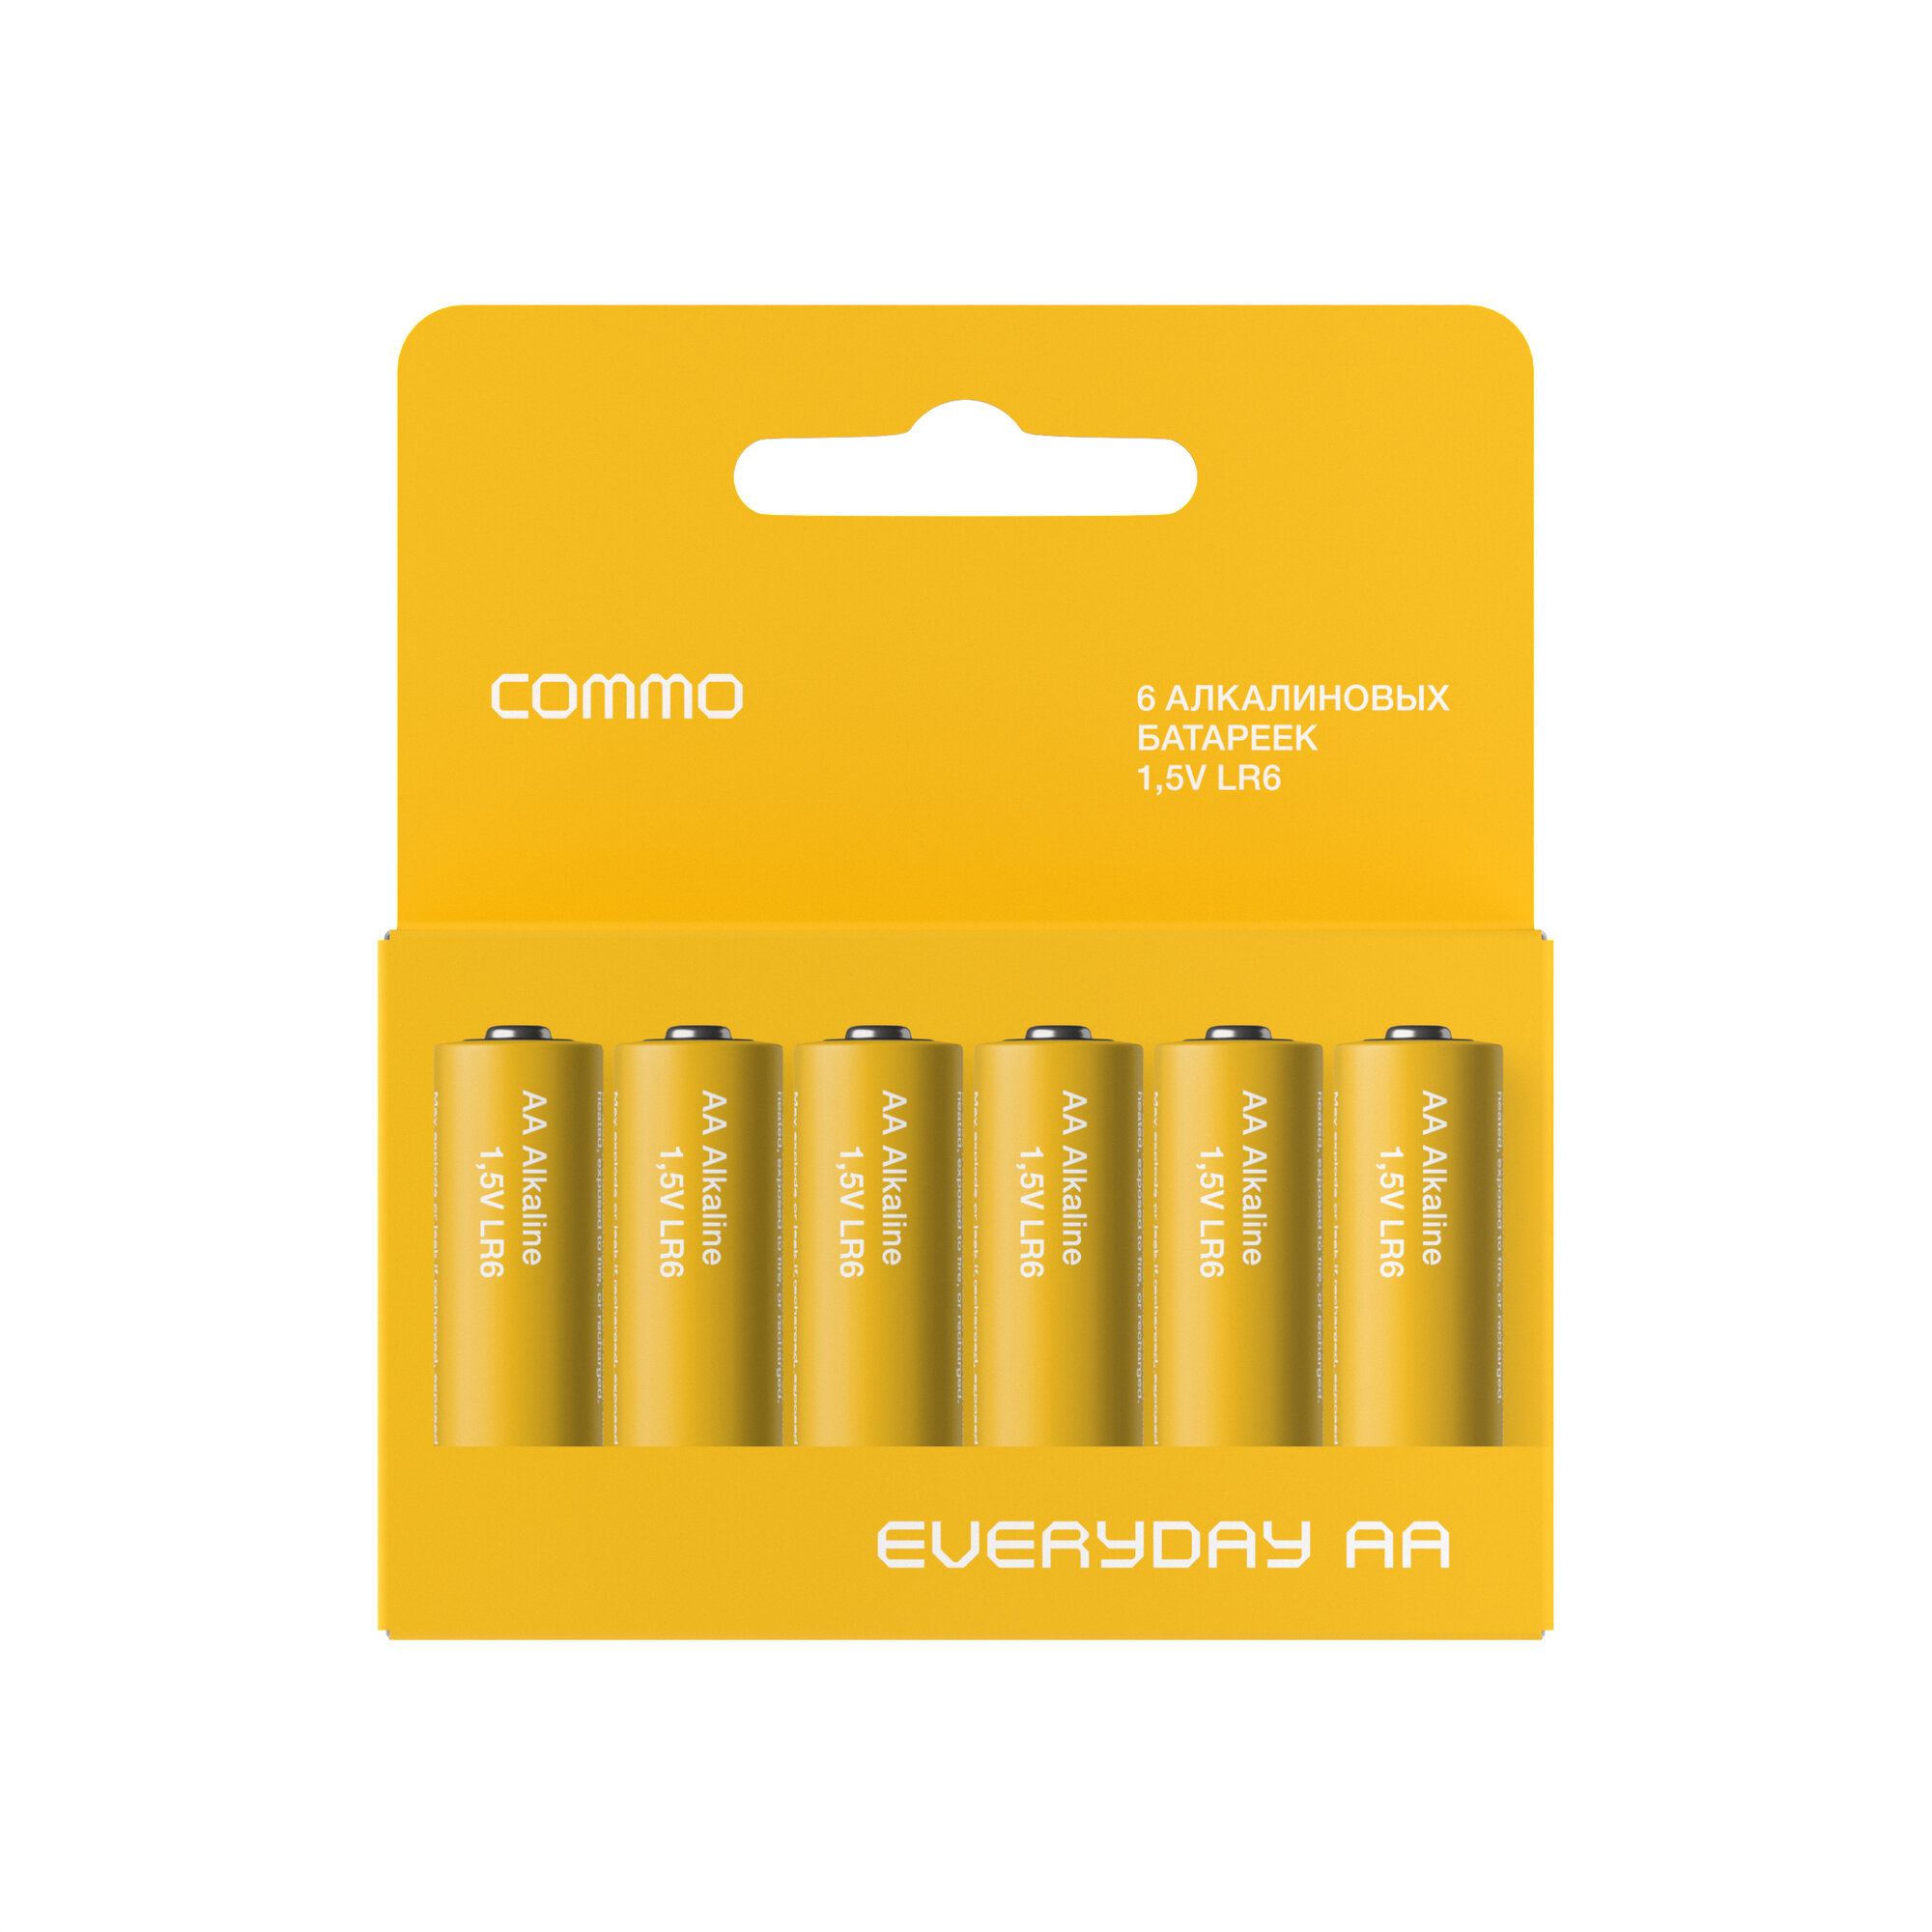 Батарейки пальчиковые алкалиновые COMMO Everyday Batteries, LR6-АА, 6 штук в упаковке